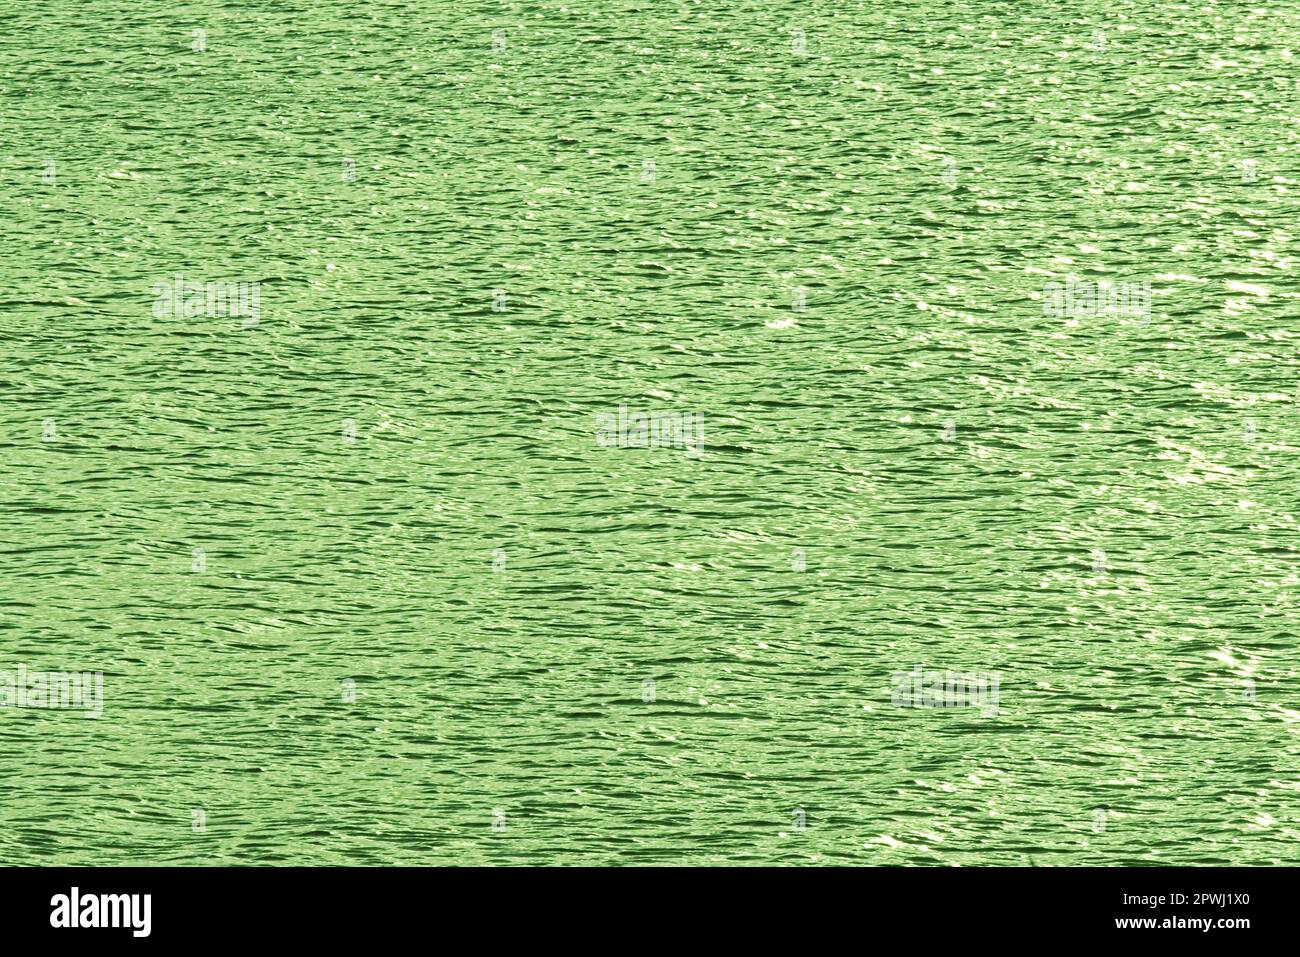 Hintergrund Wasserspiegel Nahe Zeewolde verschiedenfarbige Spiegelung des Veluwemeerarmes Stock Photo